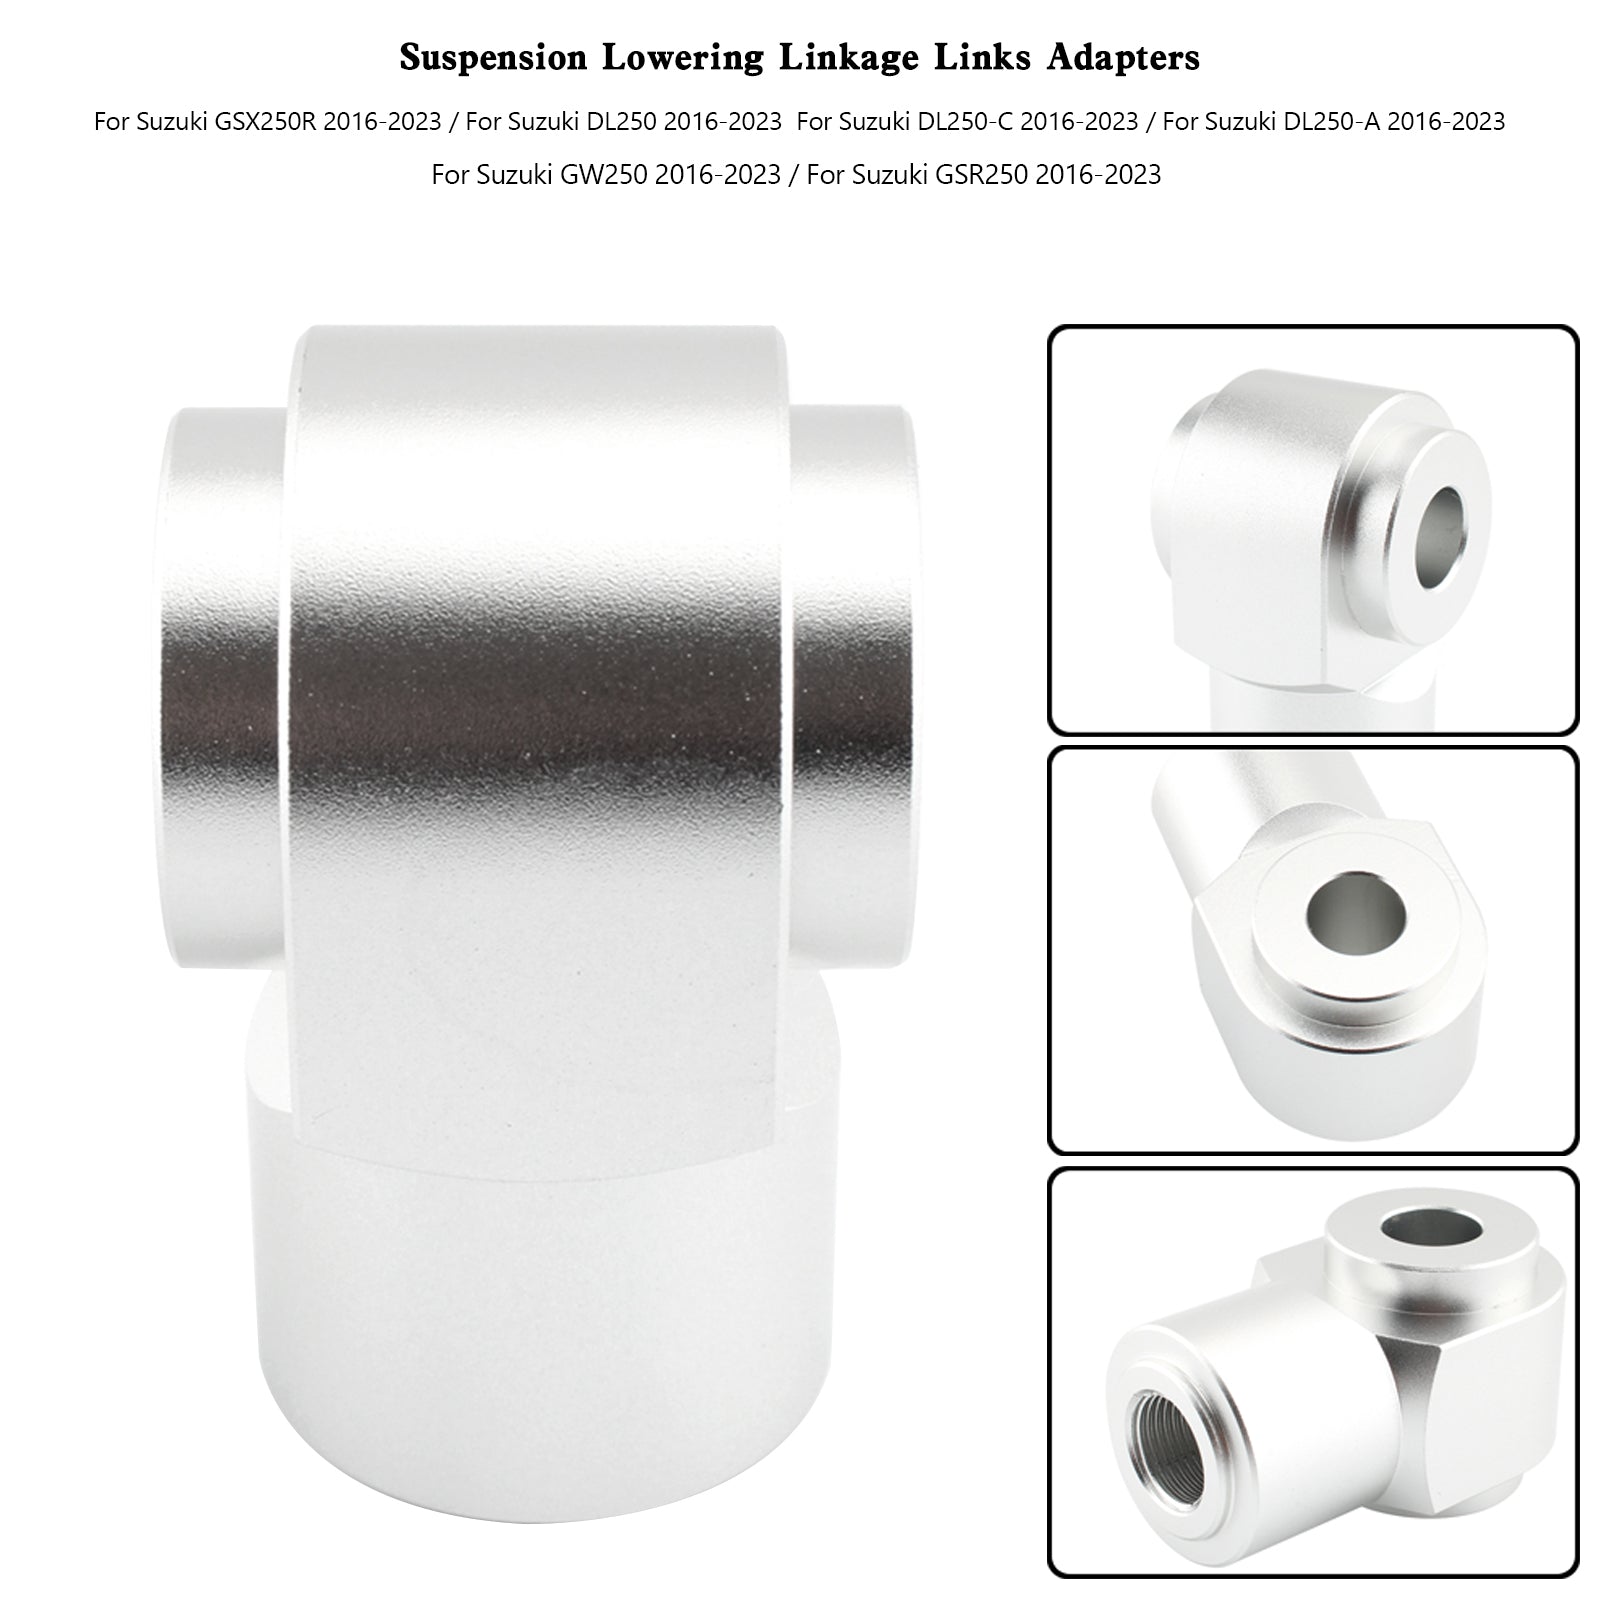 Suspension Lowering Linkage Links Kit For Suzuki GSR250R DL250 GW250 GSX250R